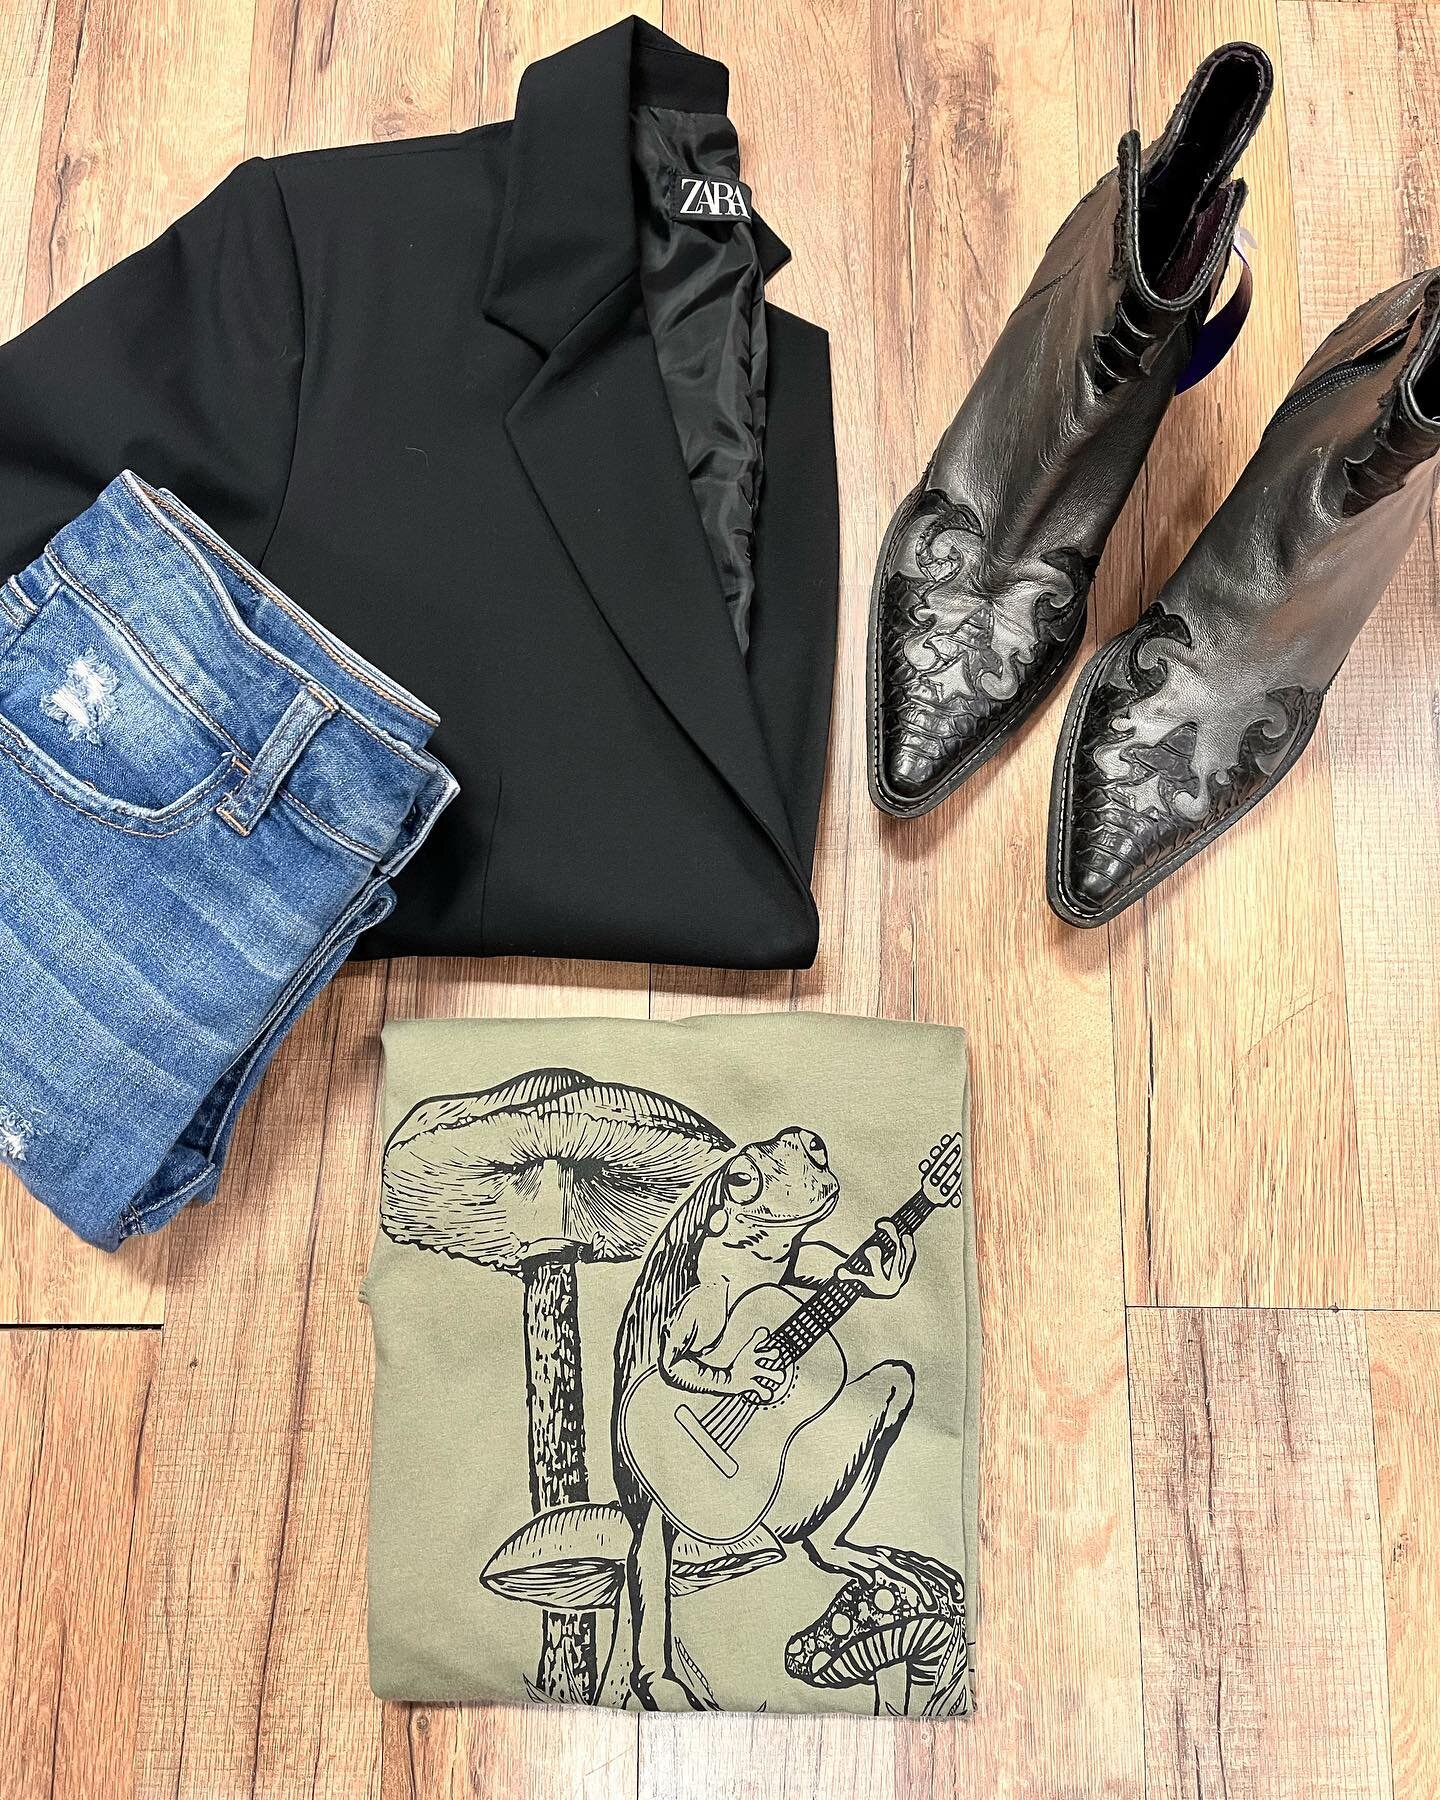 Blazer by @zara sz. med $19.50 * Jeans by @americaneagle sz. 2 $16.50 *Boots by @donaldjpliner sz. 7.5 -sale price- $35.00 Tee by Next Level sz. XS $14.50 🐸 
.
.
#uptownattic #designerconsignment #consignmentboutique #consignment #resale #blackblaze